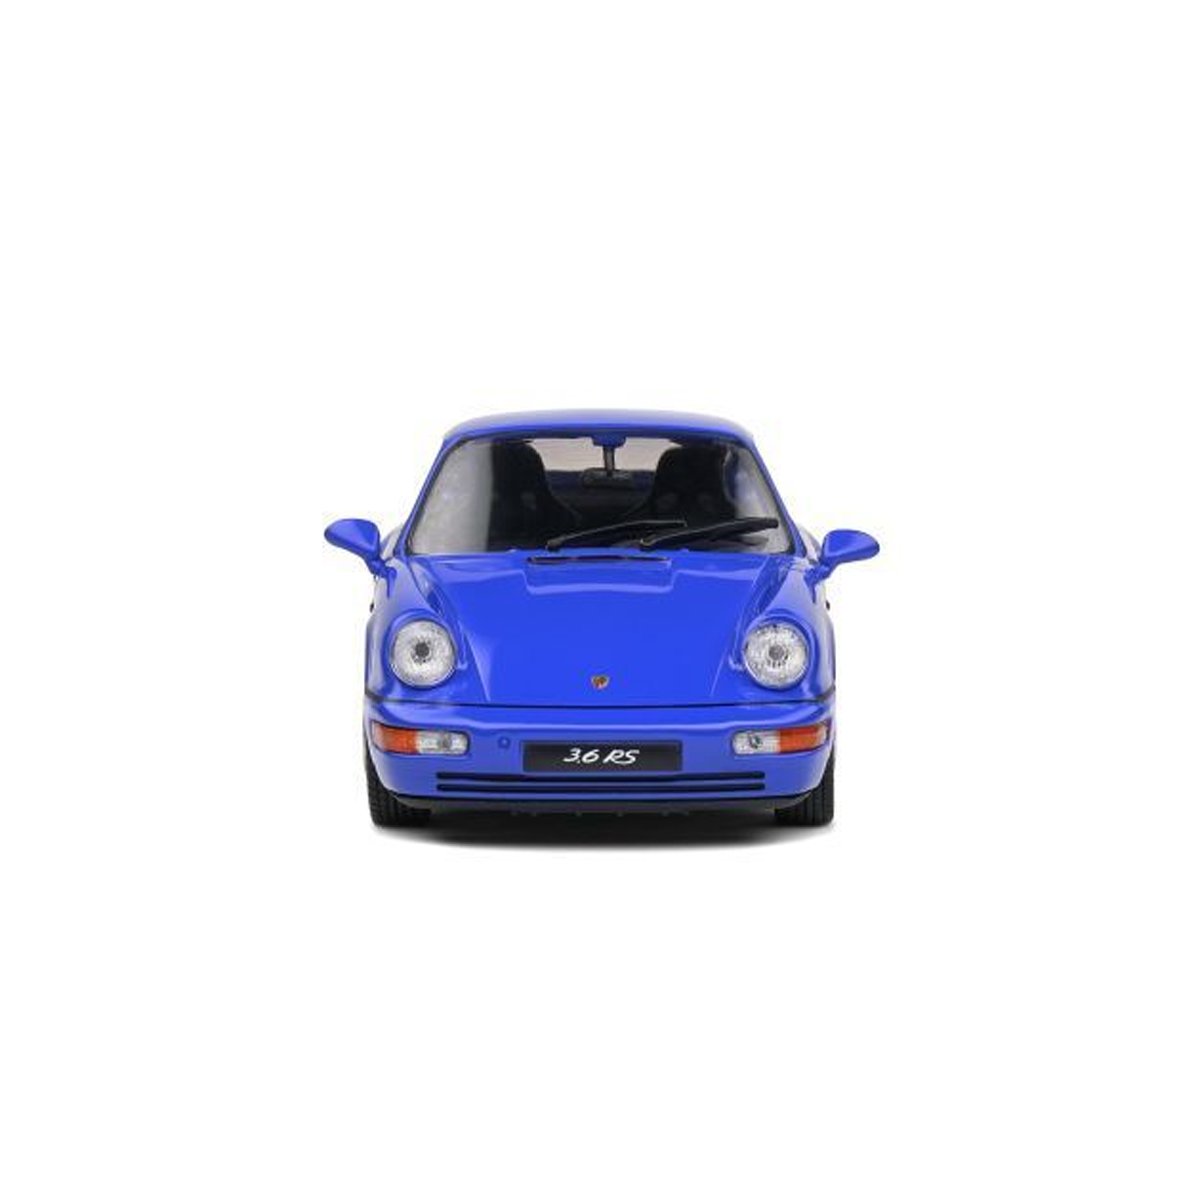 ソリッド 1/43 ポルシェ 964 RS 1992 / ブルー画像